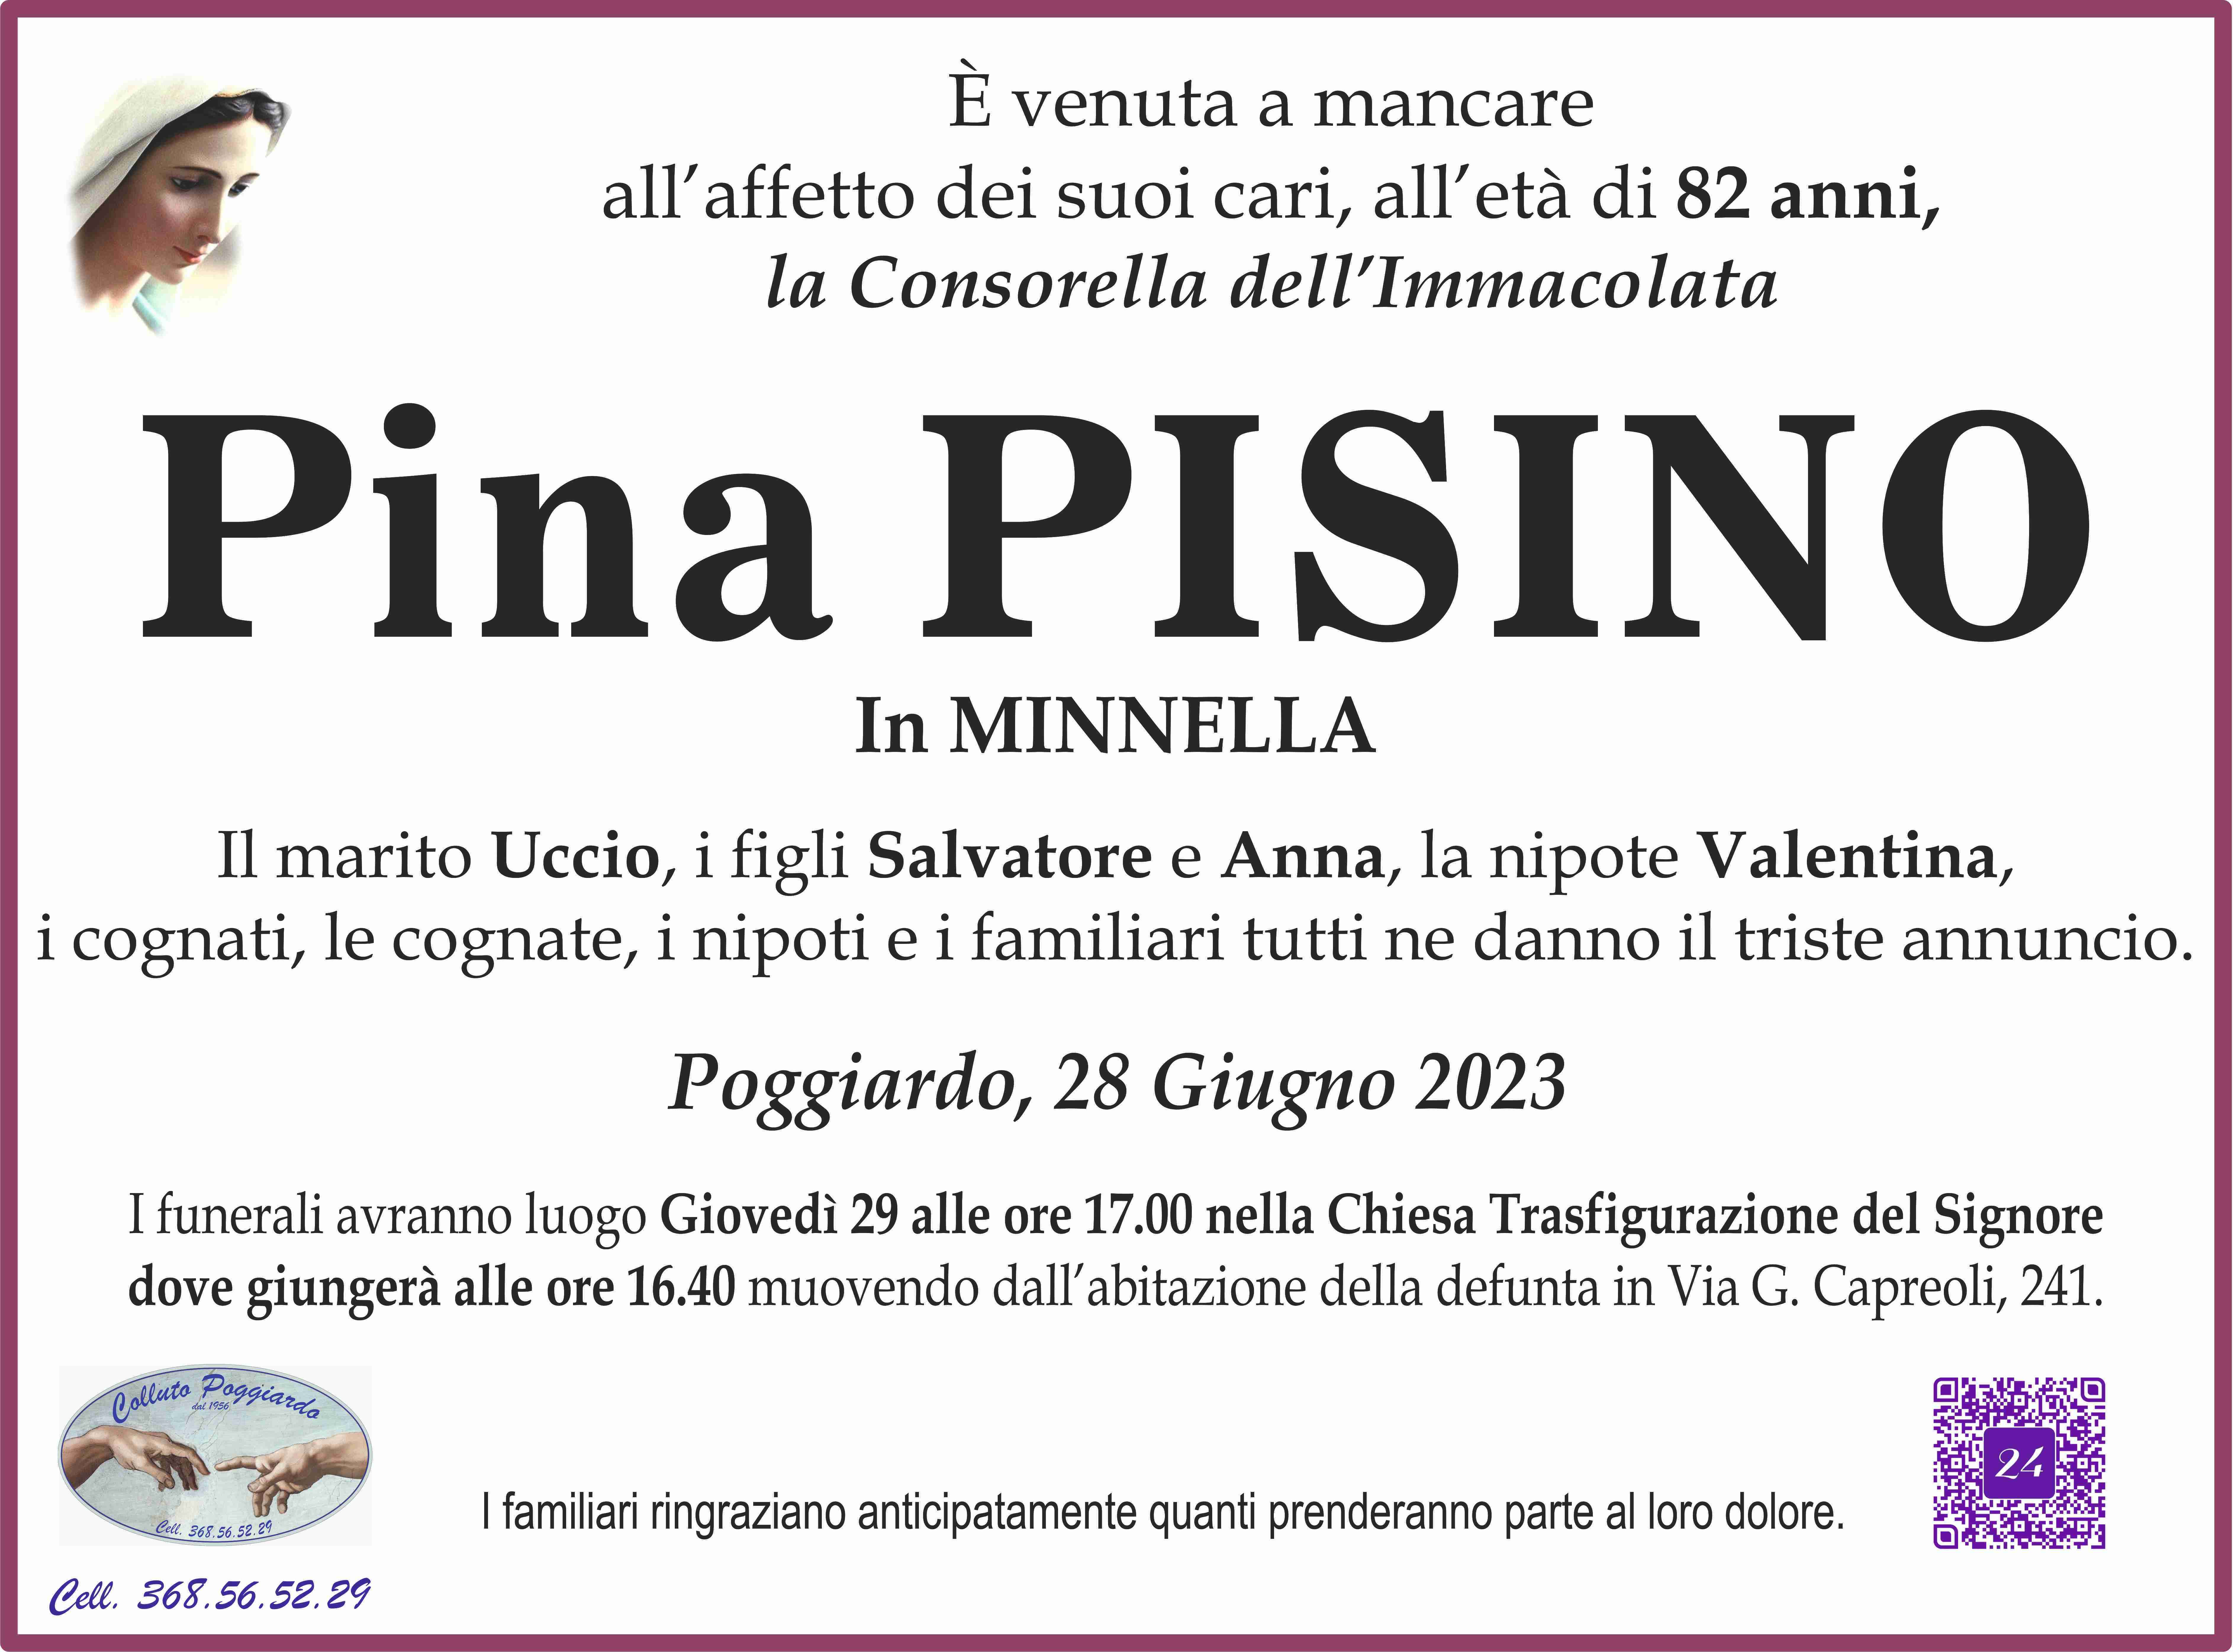 Pina Pisino